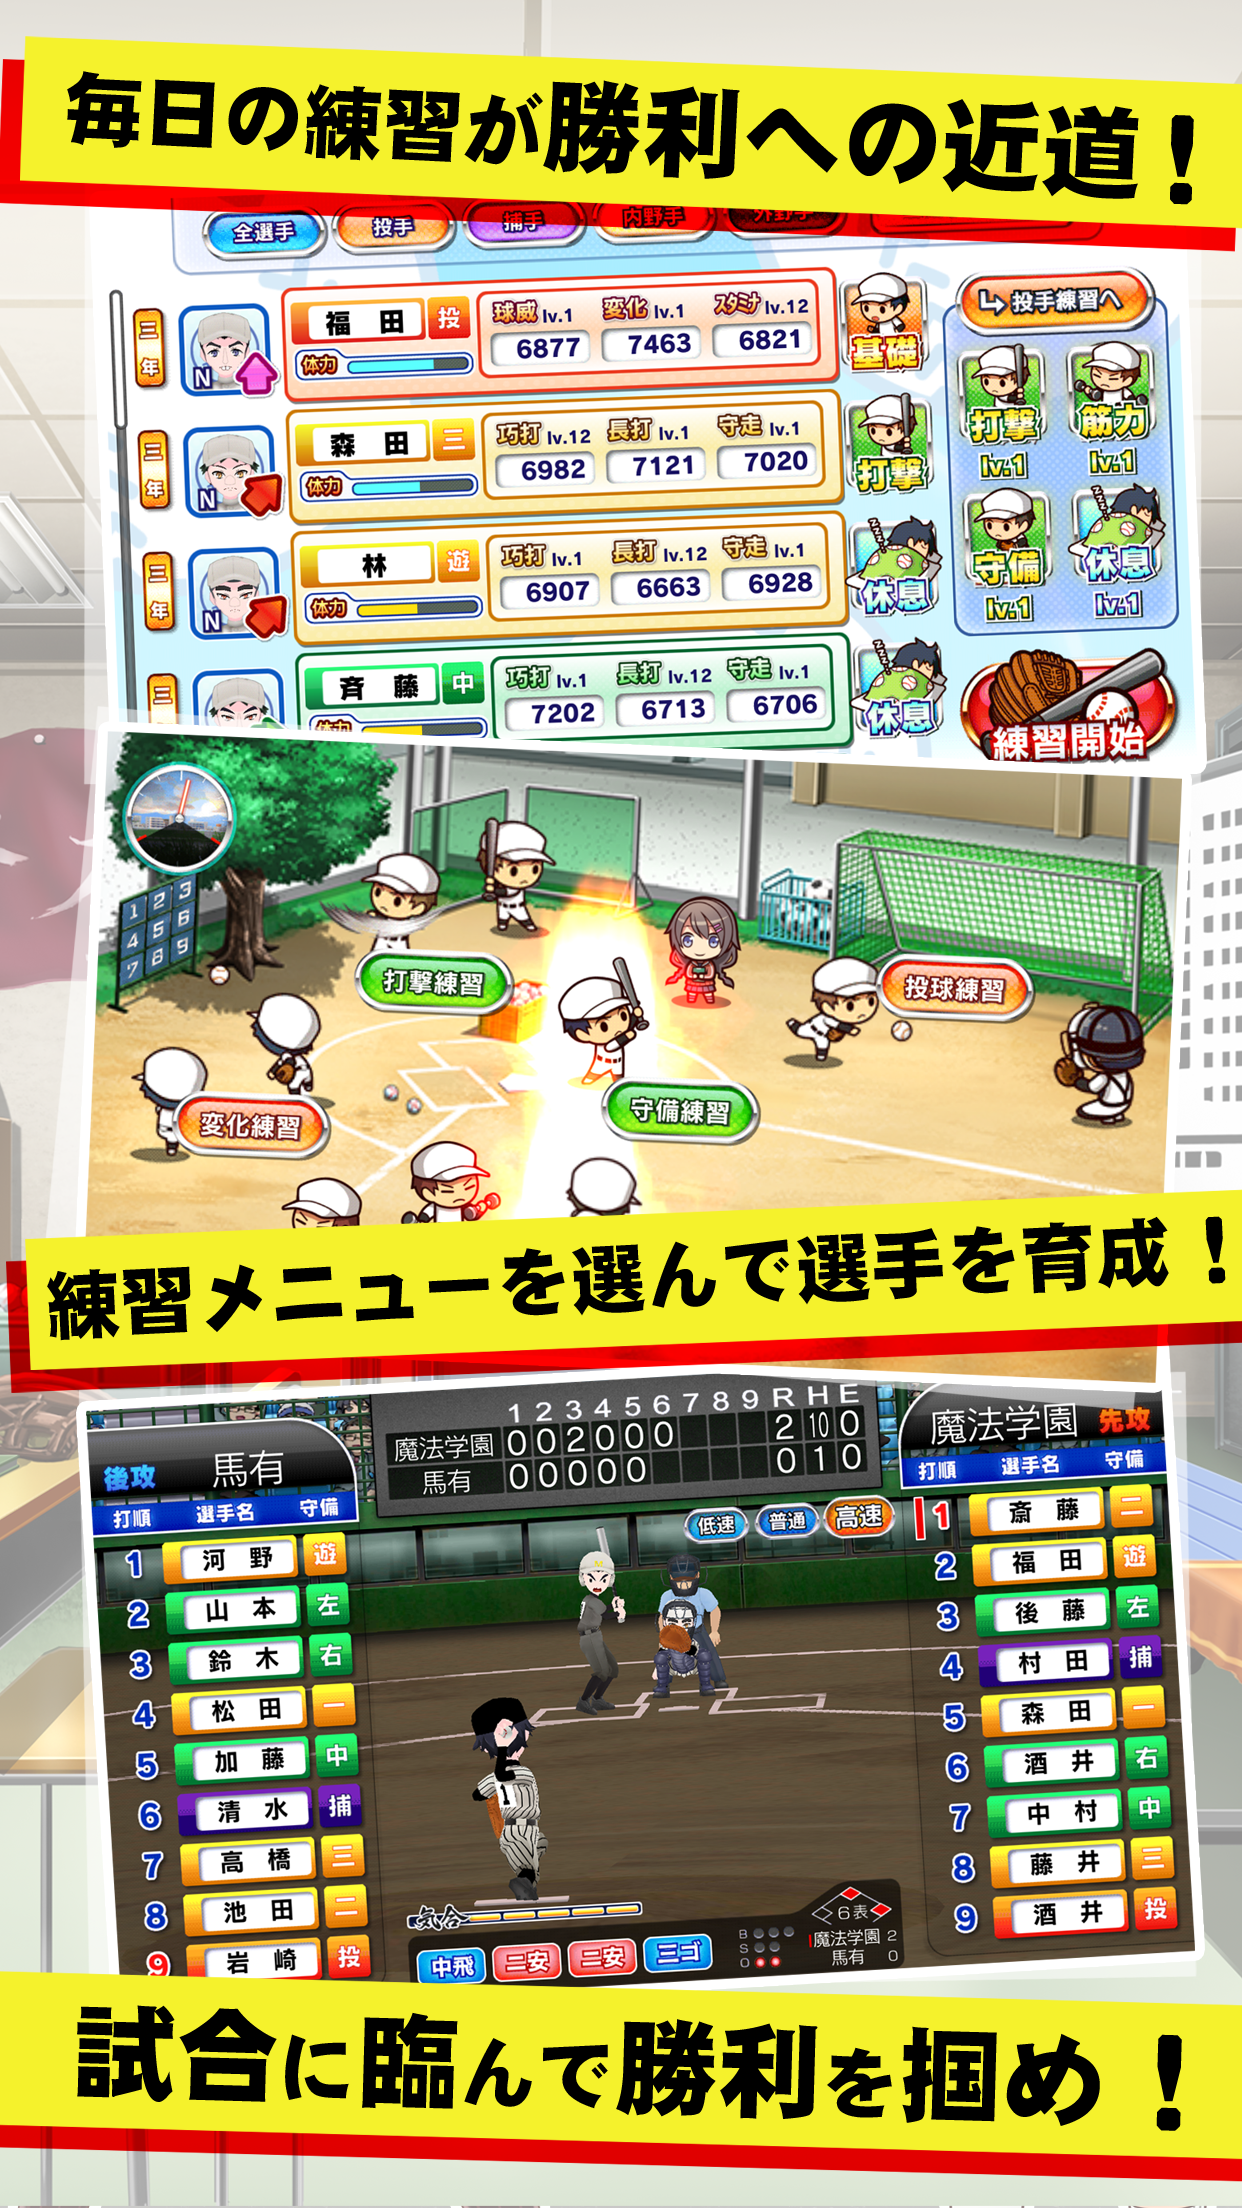 甲子園物語 -ドラマチック高校野球ゲーム- screenshot game